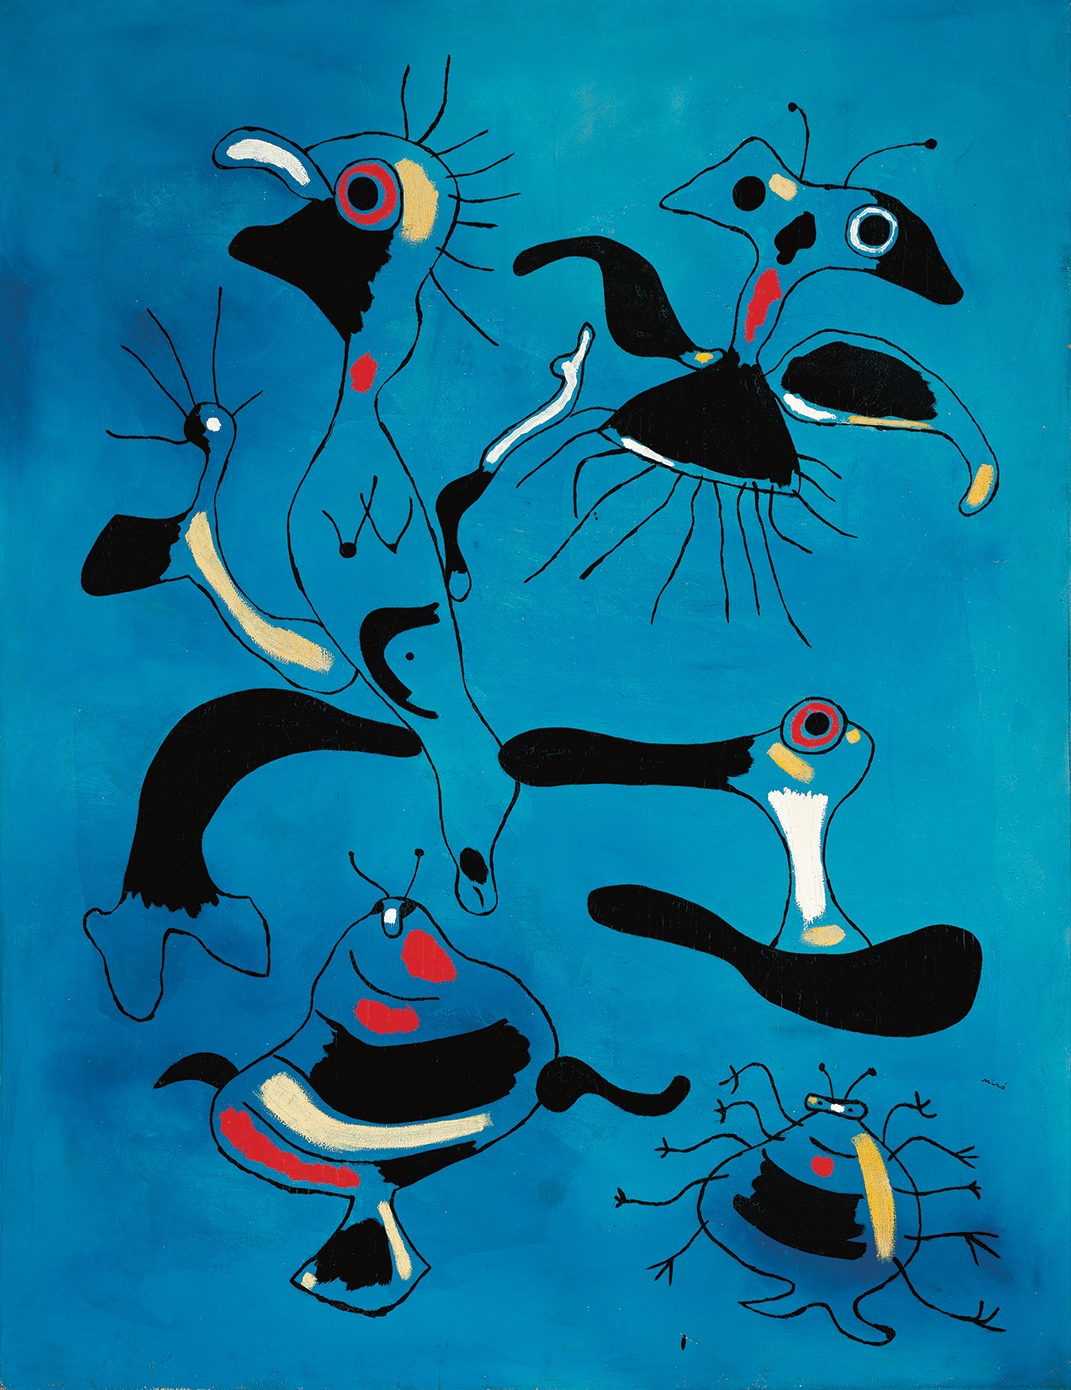 Joan Miró (1893-1983), Peinture (Oiseaux et insectes), 1938. Huile sur toile, 114 x 88 cm. Albertina, Vienne – Sammlung Batliner. Photo service de presse. © Successió Miró / Adagp, Paris, 2023